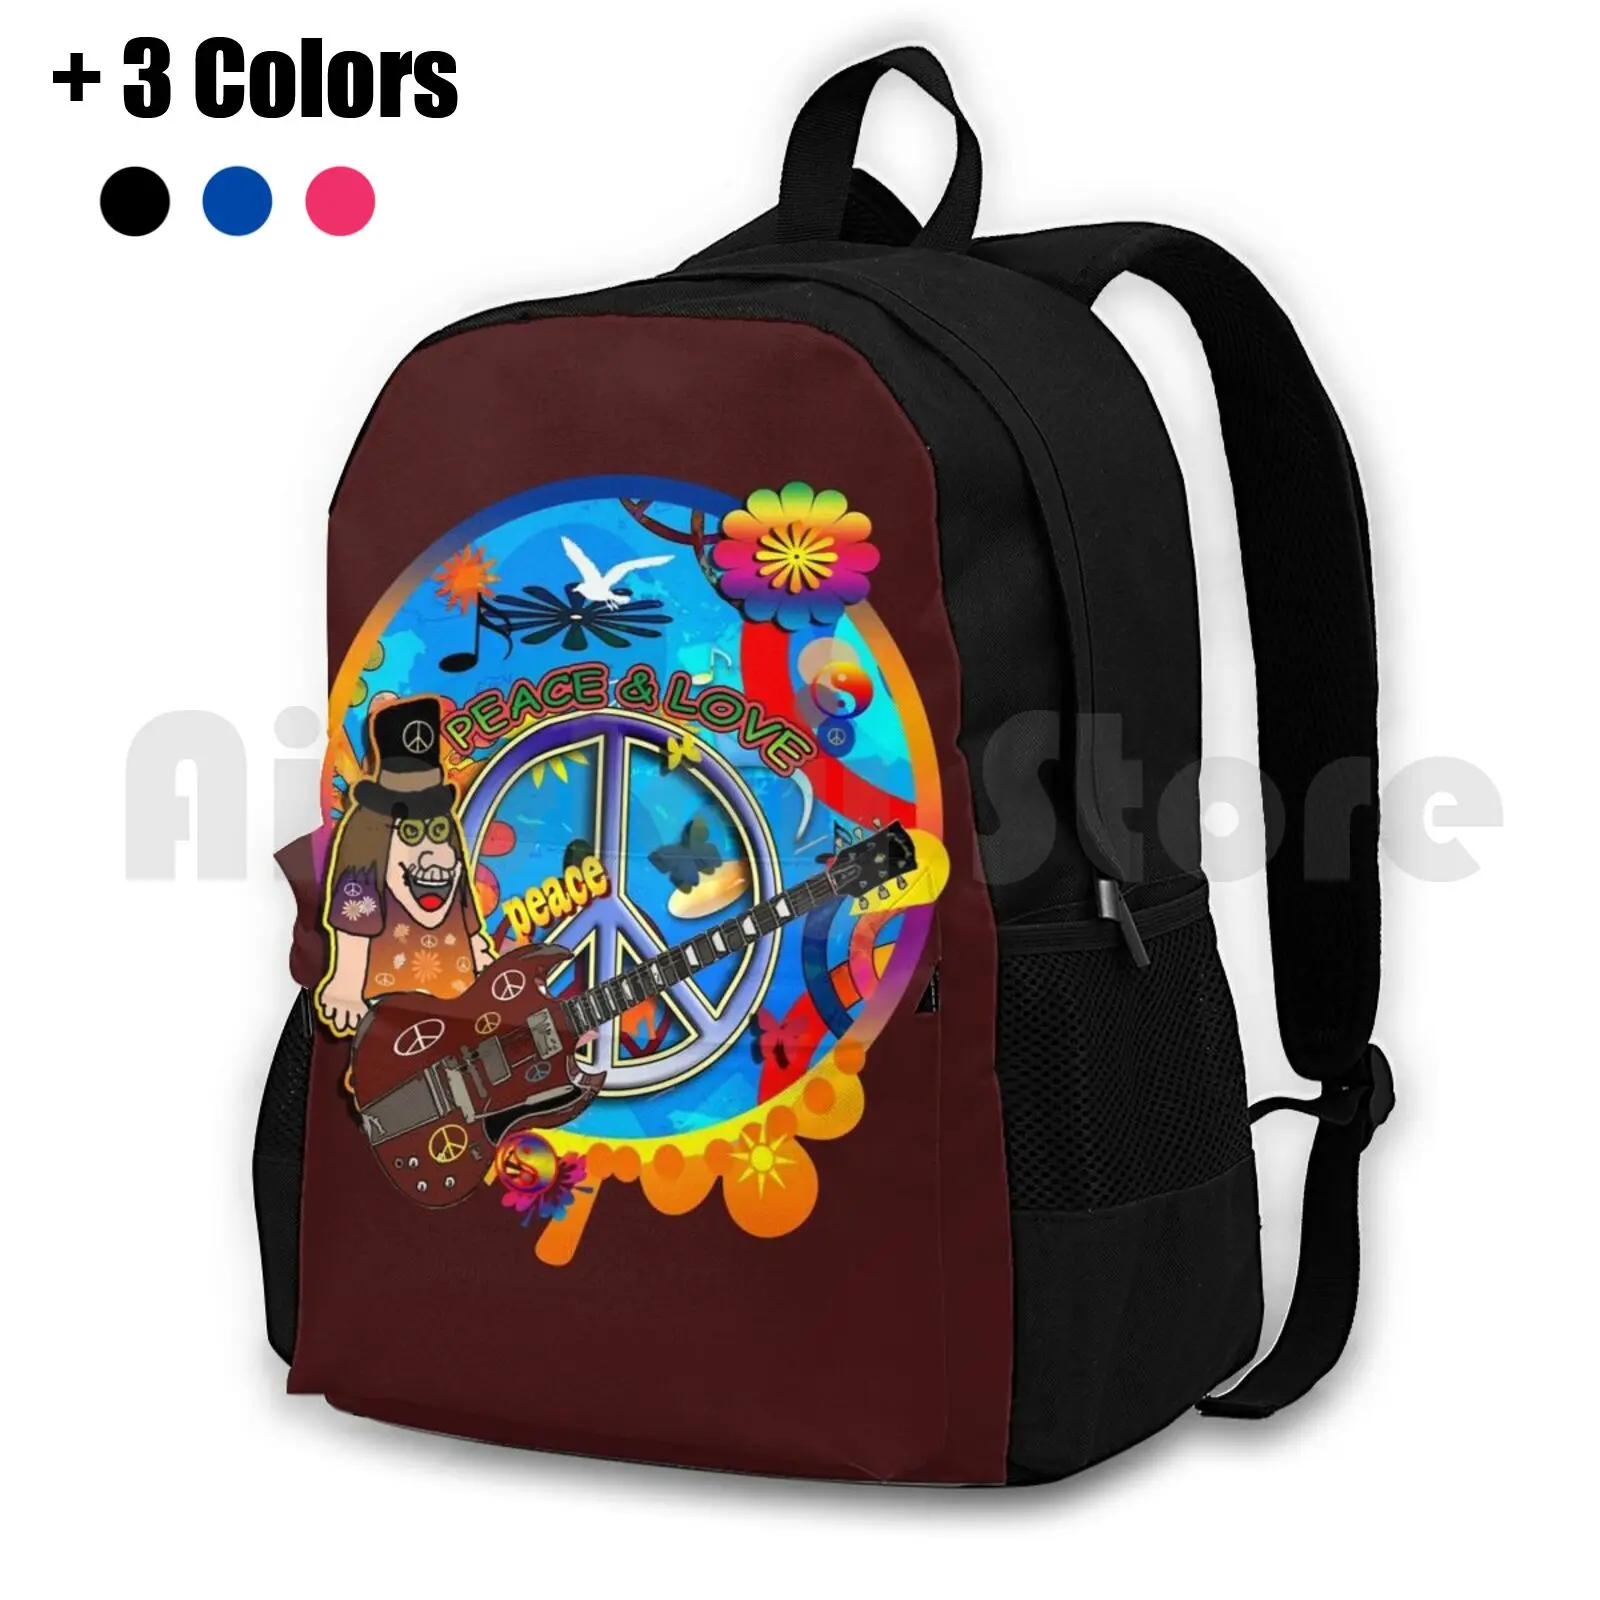 

Походный рюкзак Hippie, спортивная сумка для верховой езды, скалолазания, с принтом в виде цветов, мир, любовь, 60-х годов